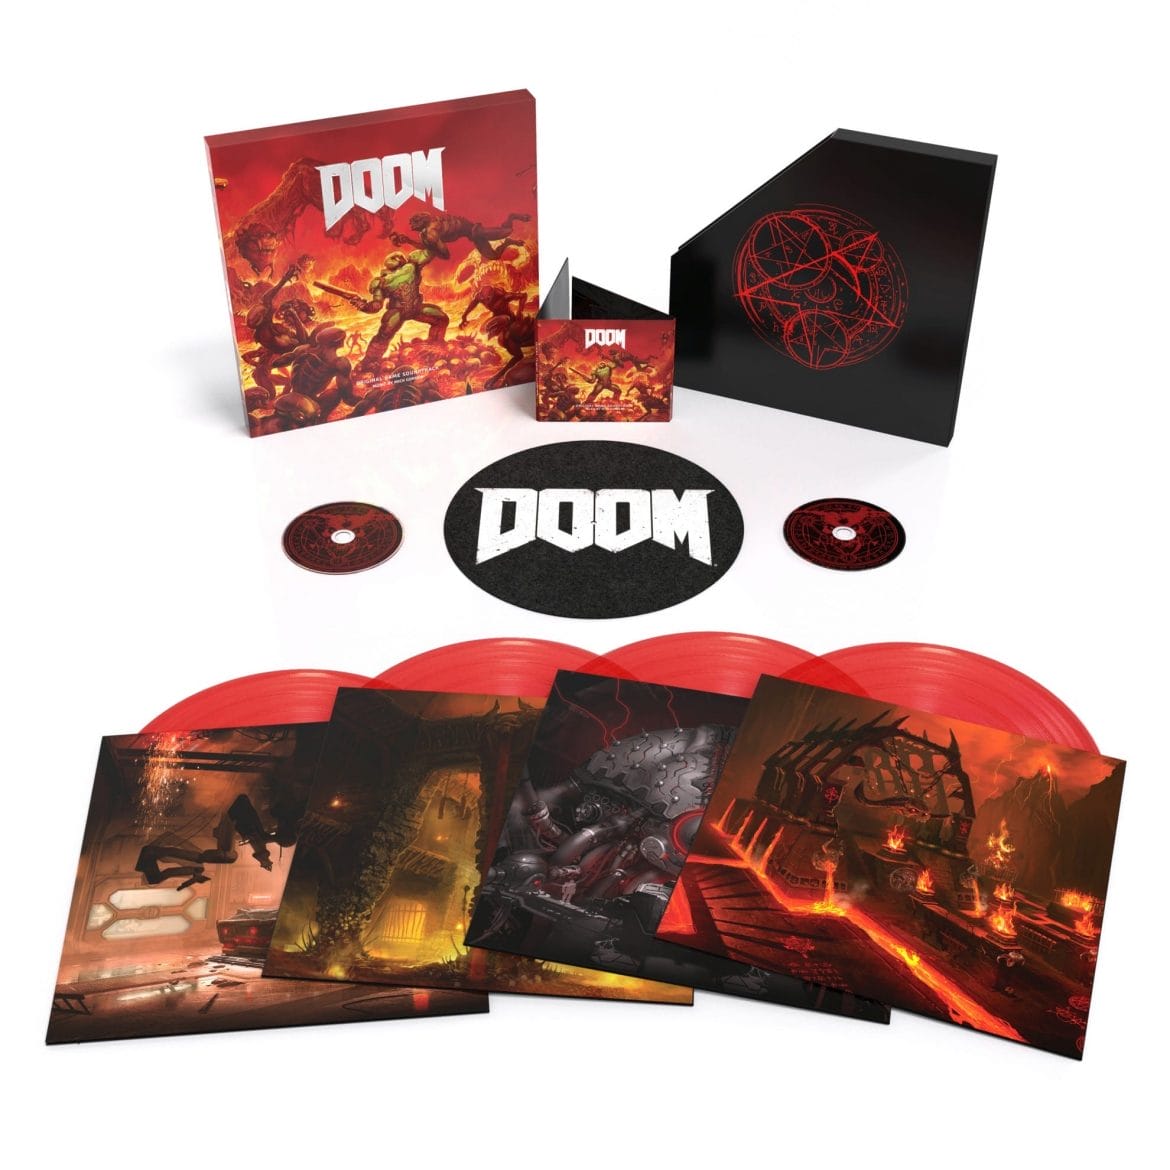 Der Doom-Soundtrack in der limitierten Vinyl-Edition. Mit dabei sind auch die CDs. (Foto: Laced Records)